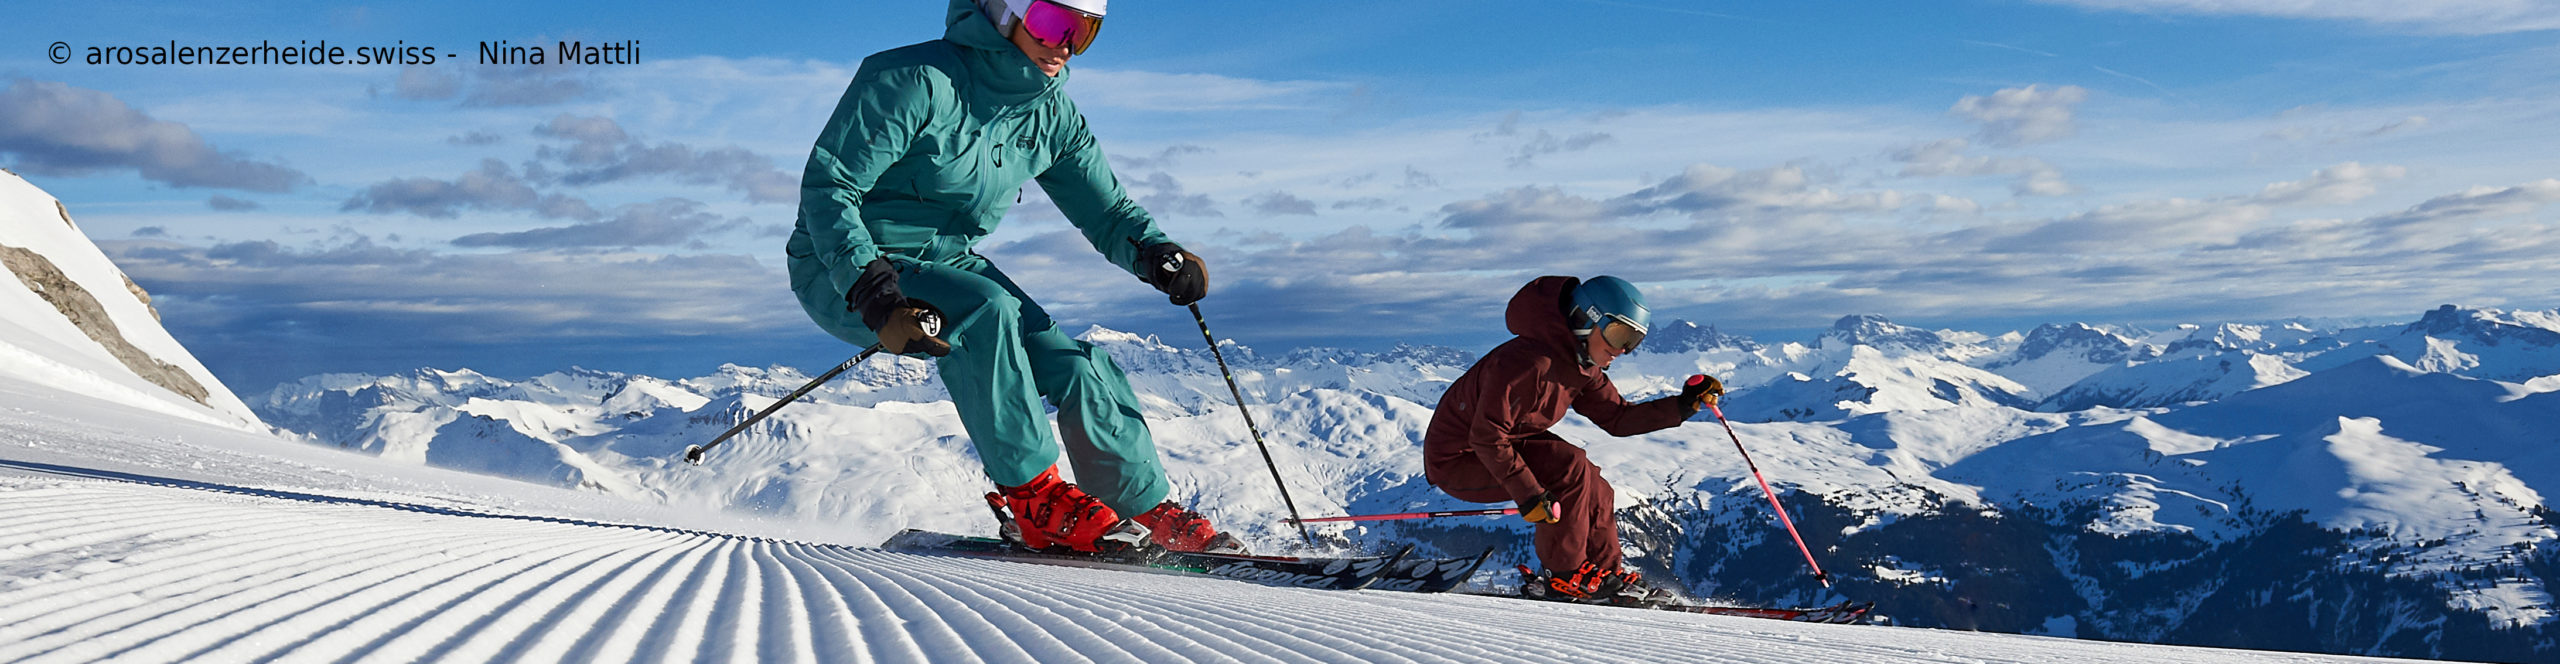 AROSA – LENZERHEIDE – SCHWEIZ – Weltcuport zum Sparpreis – 3 Skitage 2 Übernachtungen inkl. Skipass 